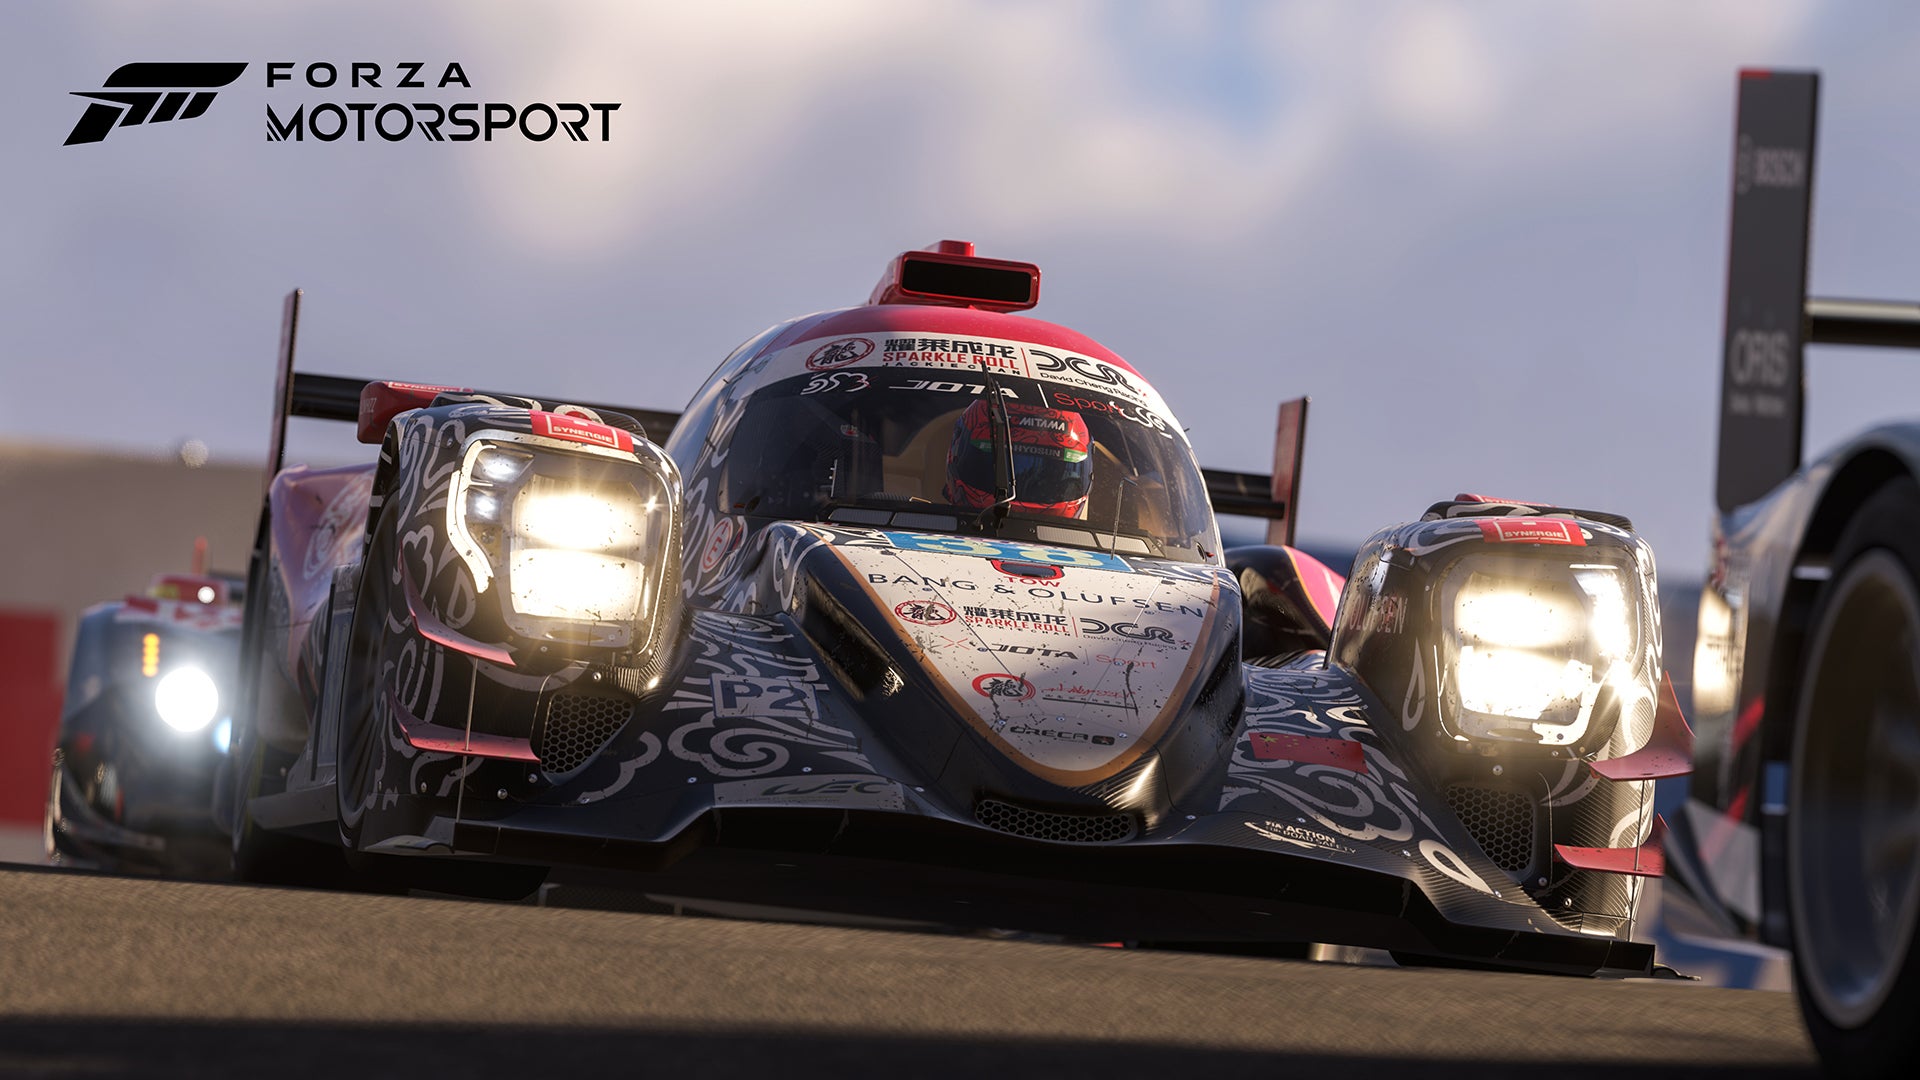 Image for Představena Forza Motorsport, která přifrčí do konce června